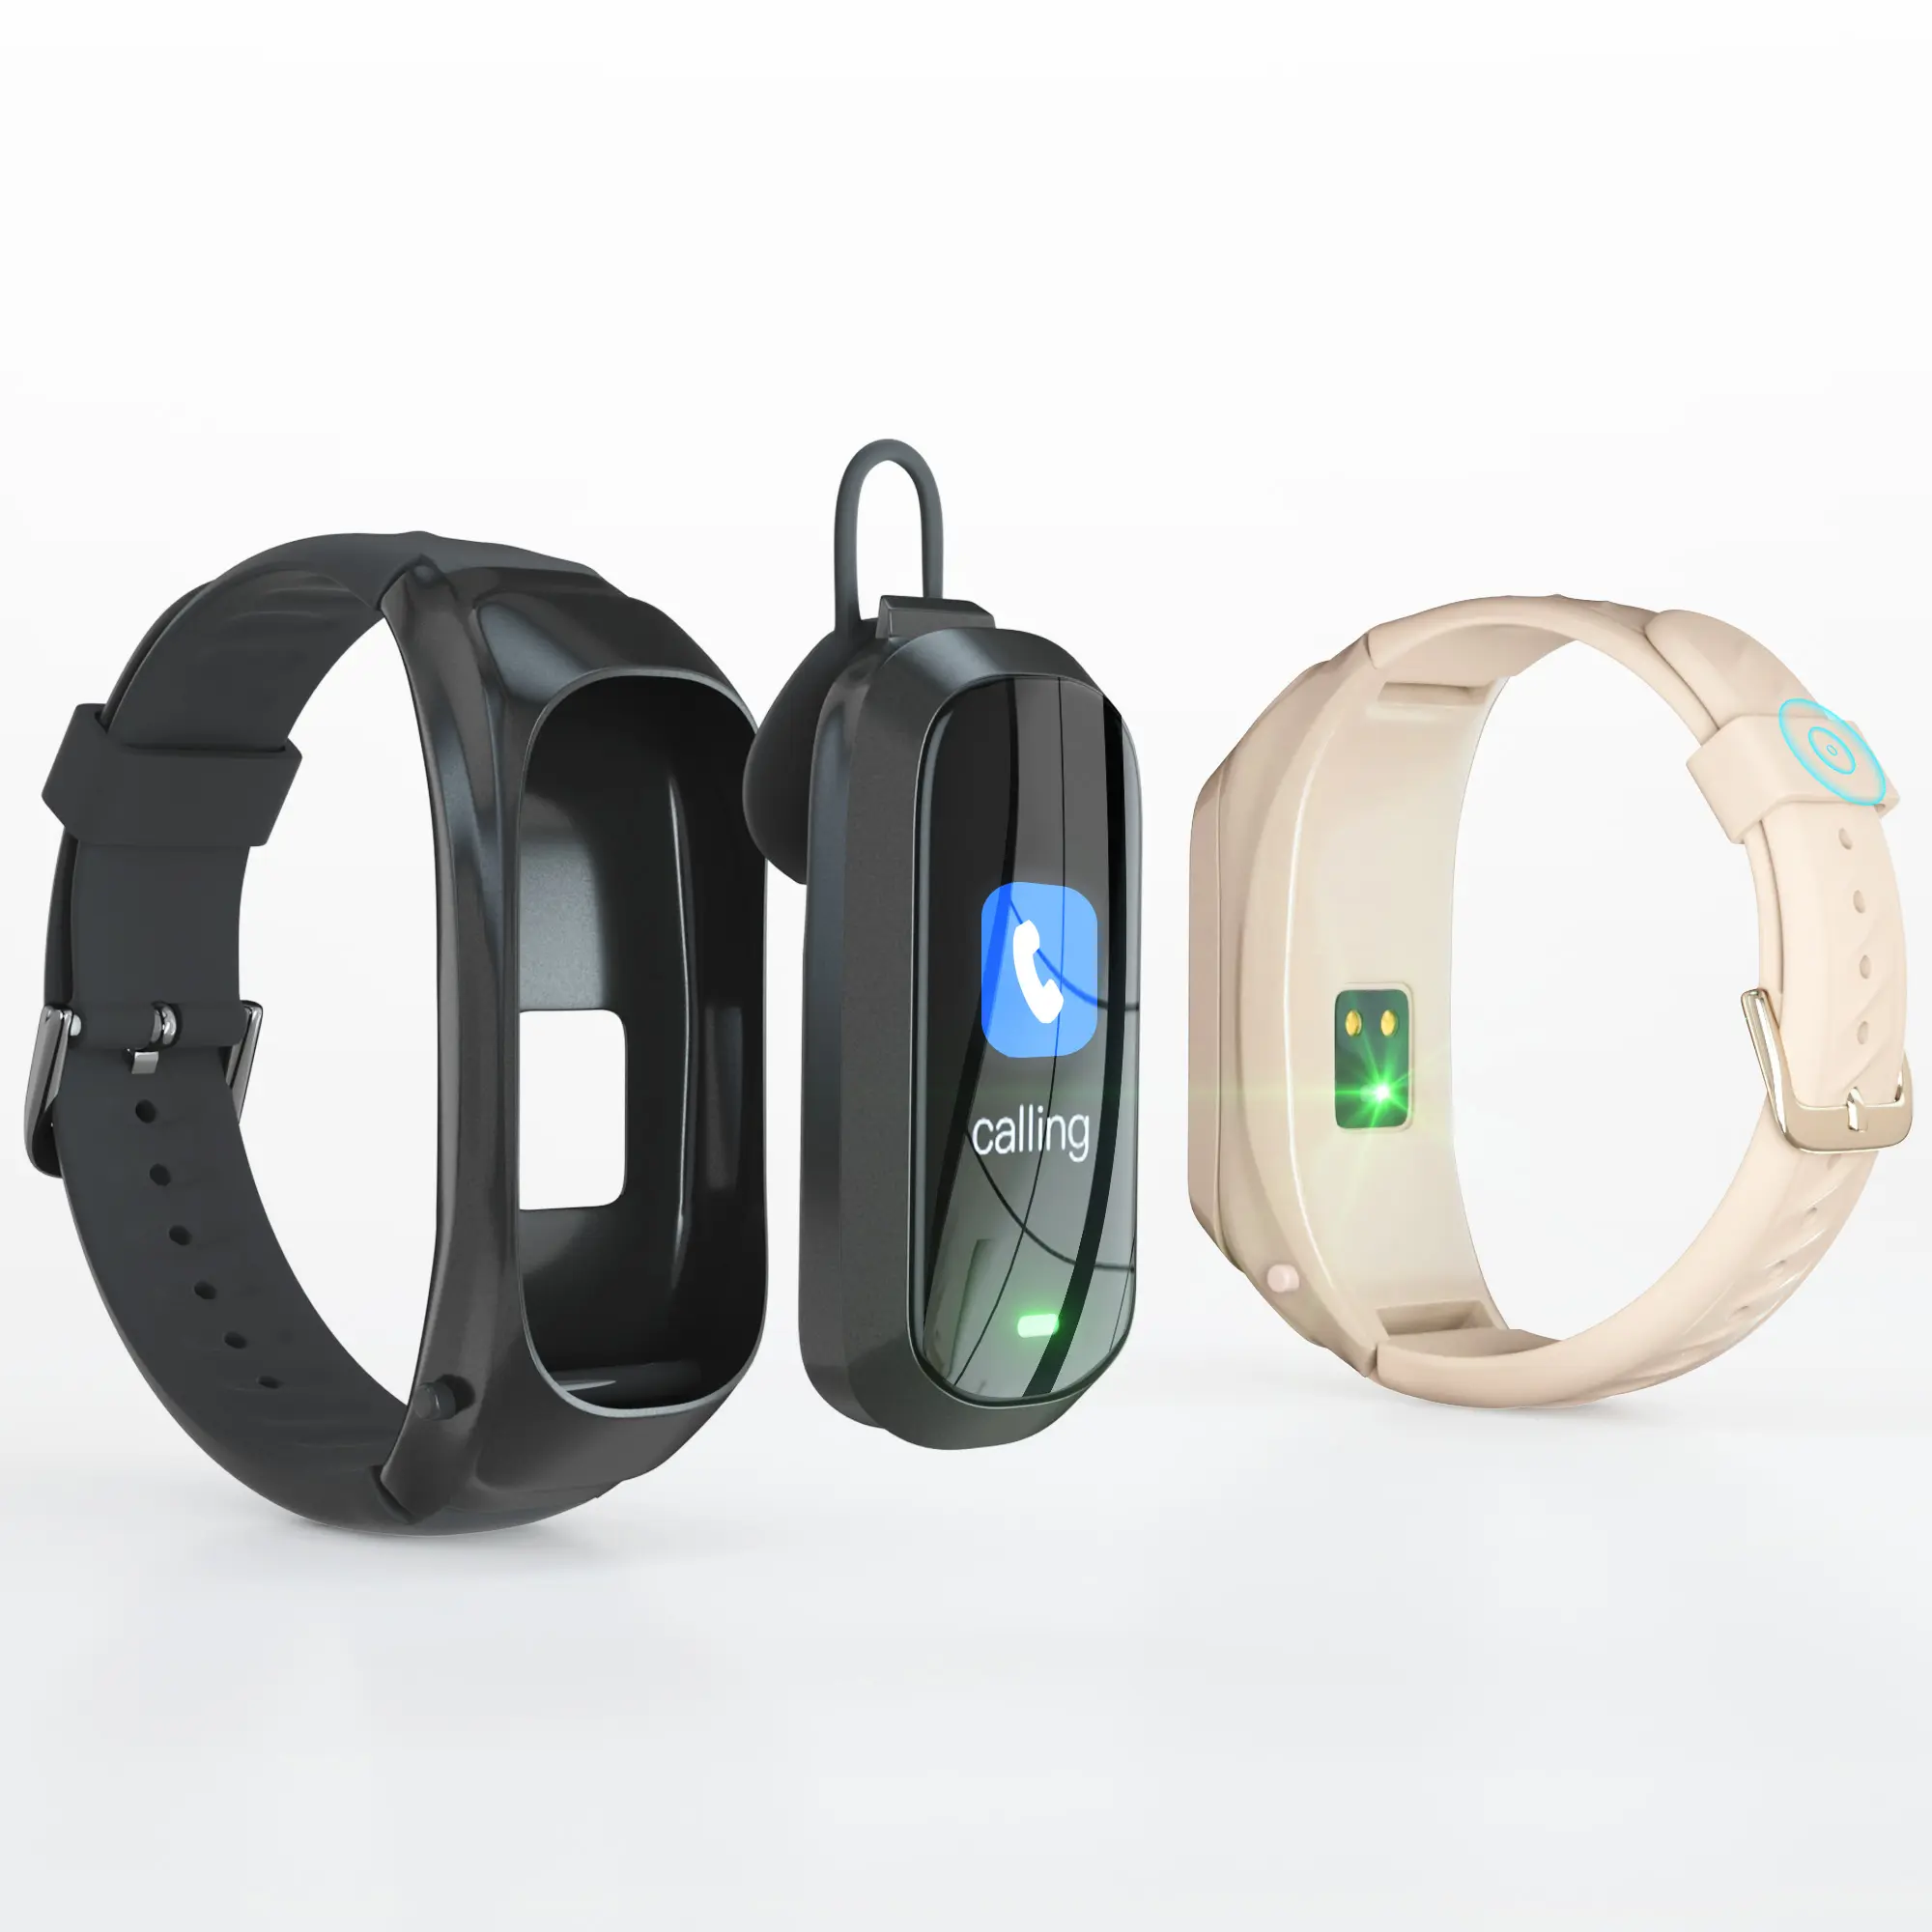 JAKCOM B6 스마트 통화 시계 신제품 핫 세일 이어폰 무선 온라인 쇼핑 무료 배송 전자